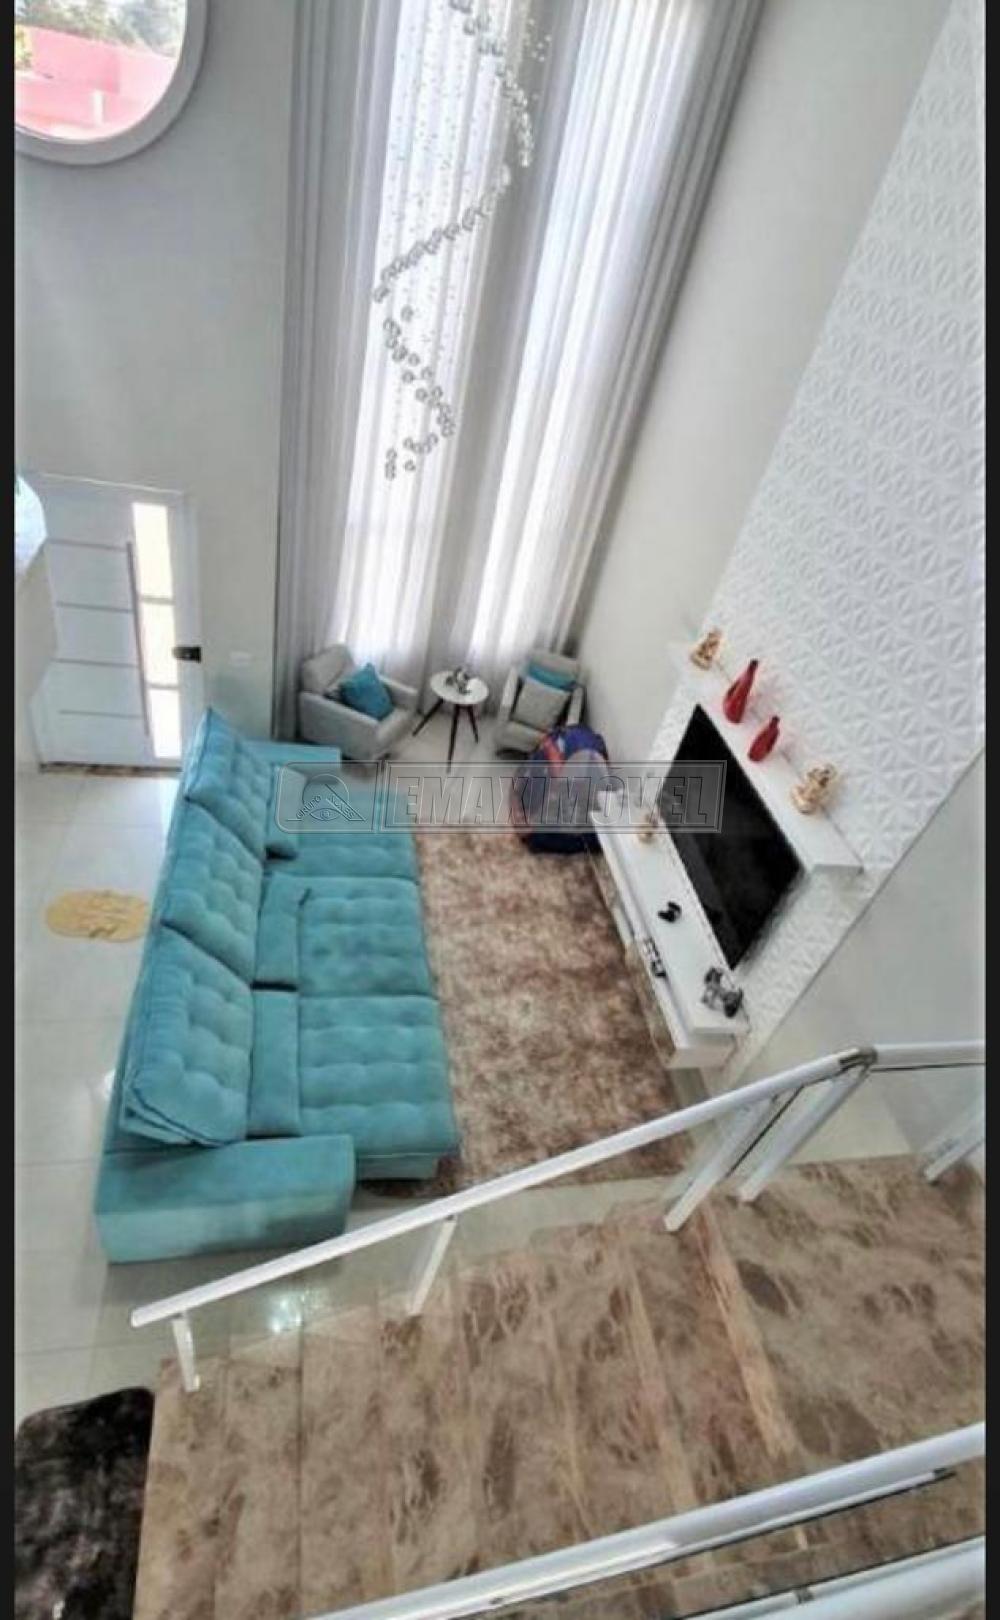 Comprar Casa / em Condomínios em Sorocaba R$ 990.000,00 - Foto 3